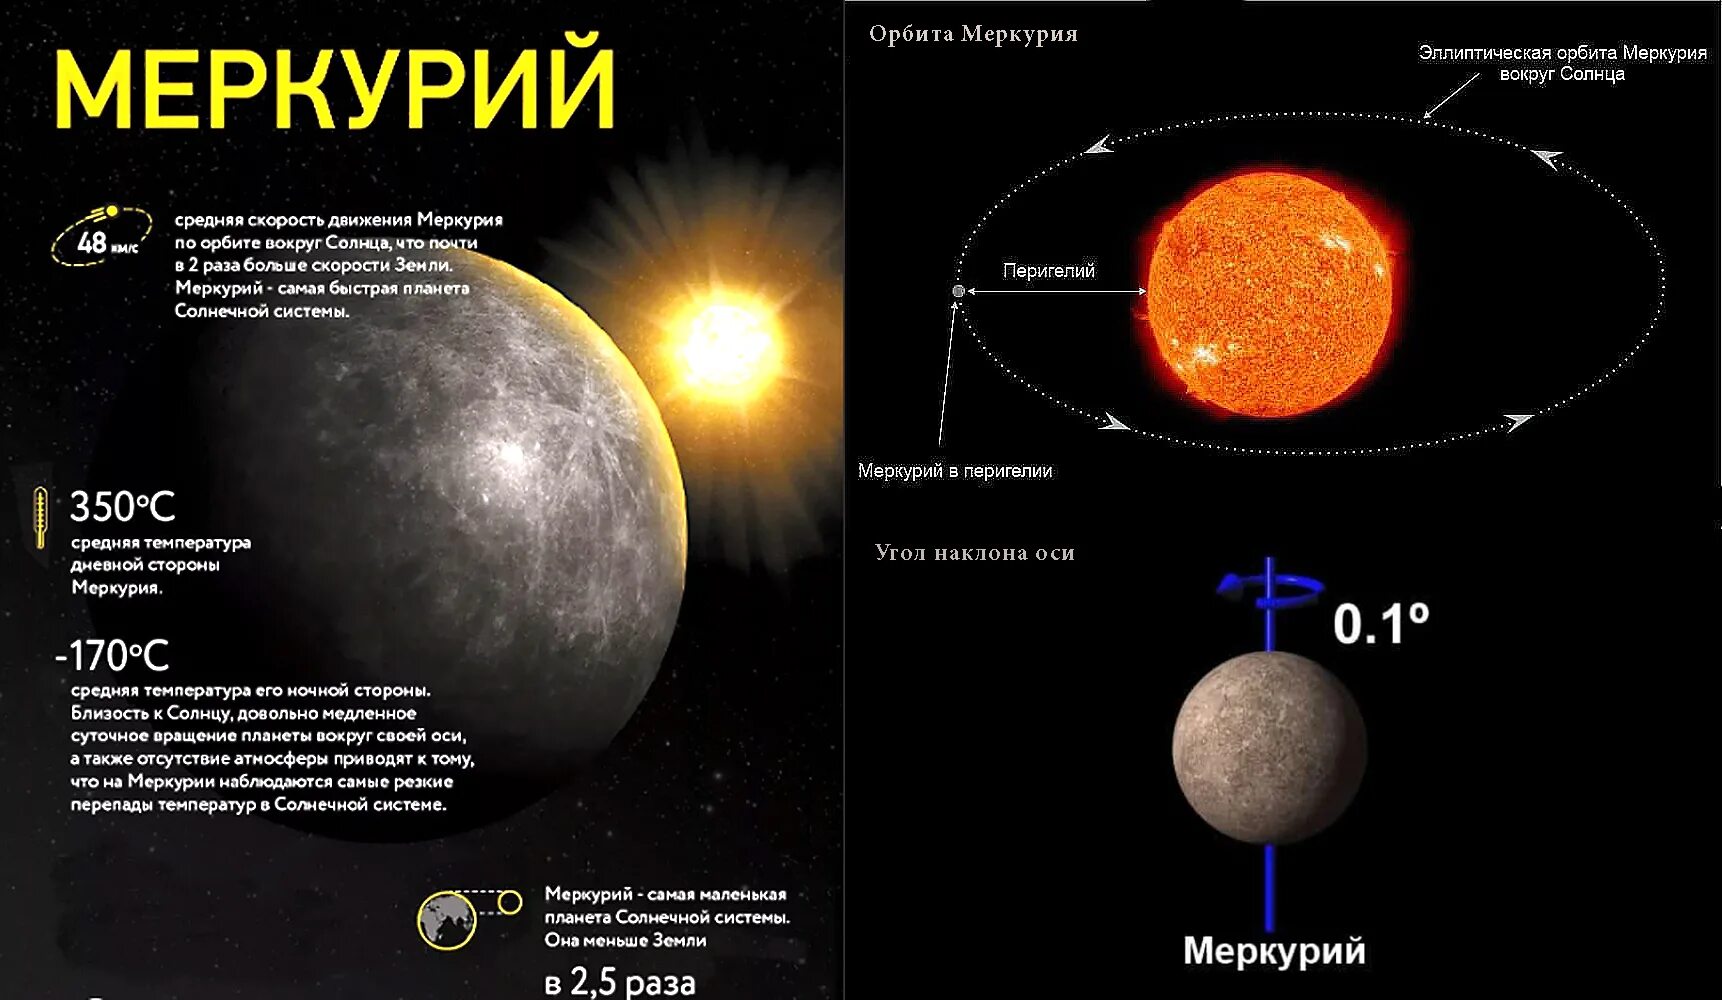 Скорость орбиты меркурия. Направление вращения Меркурия. Меркурий Орбита вокруг солнца. Меркурий Планета угол наклона оси. Угол наклона оси вращения Меркурия.